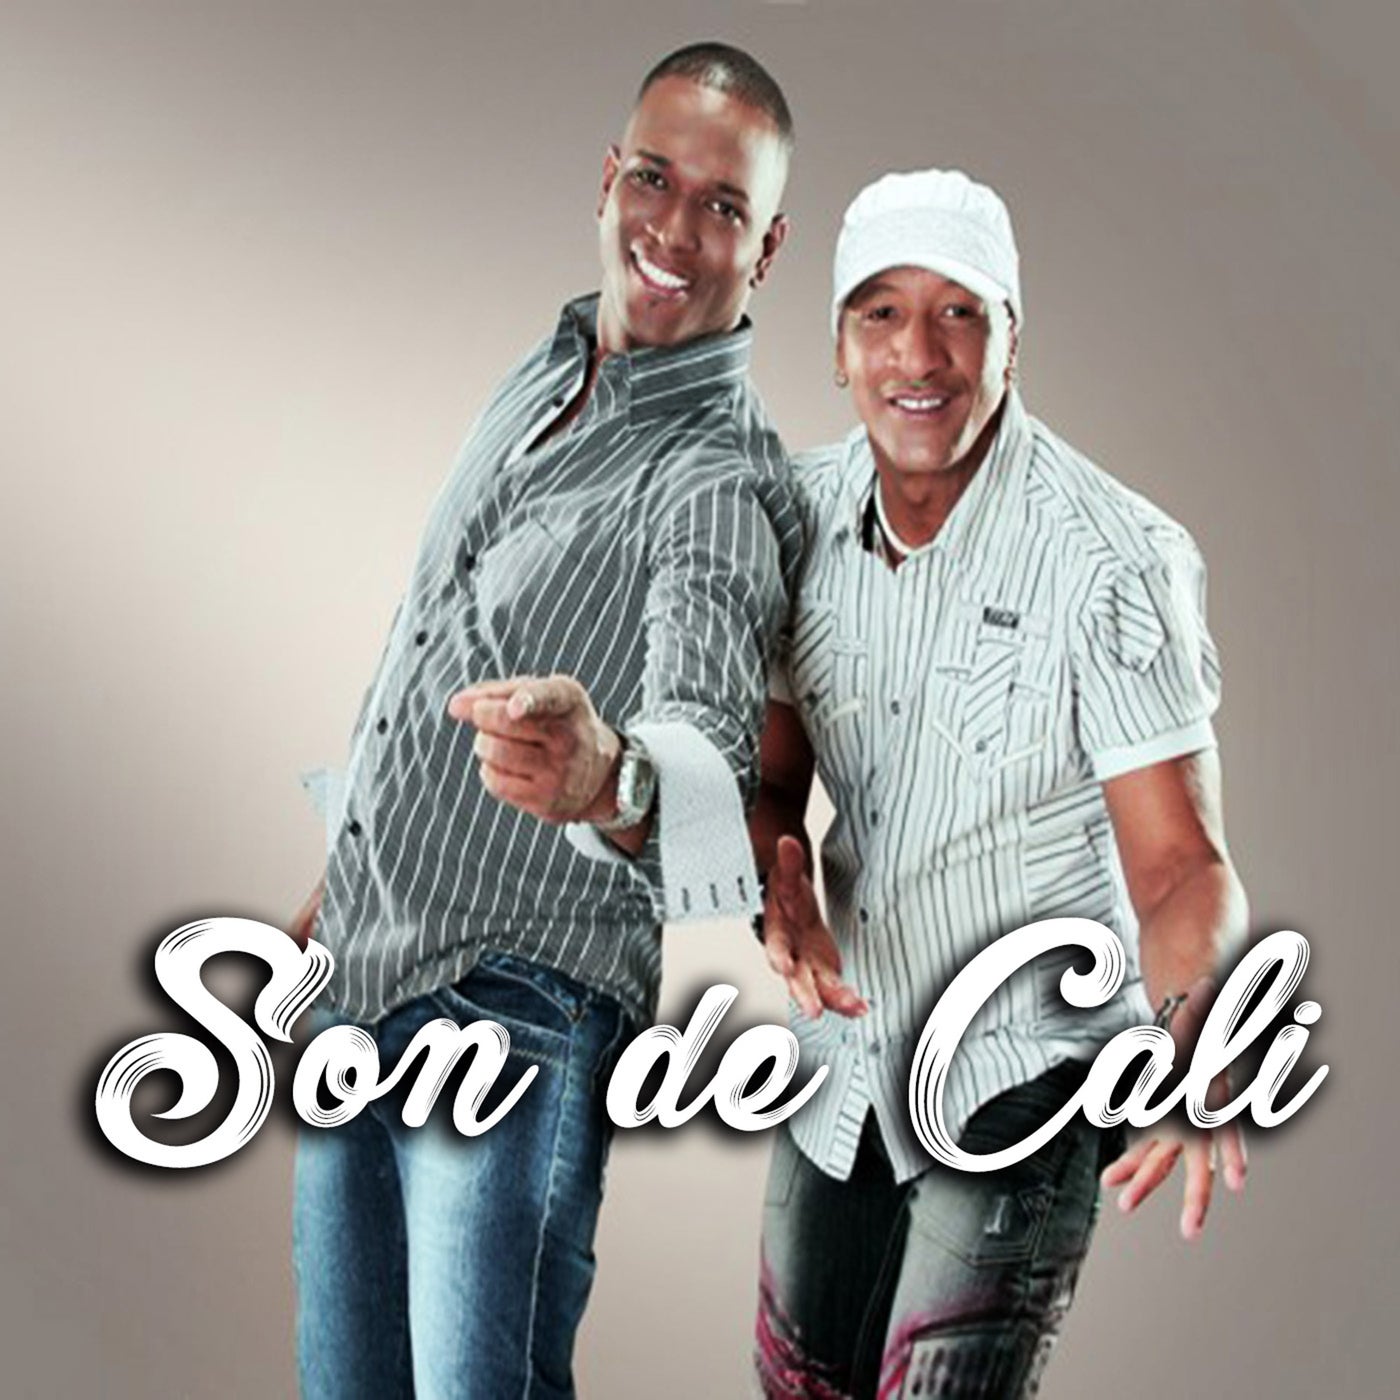 Pelando by El Dicy Boy & Isaias LM on Beatsource